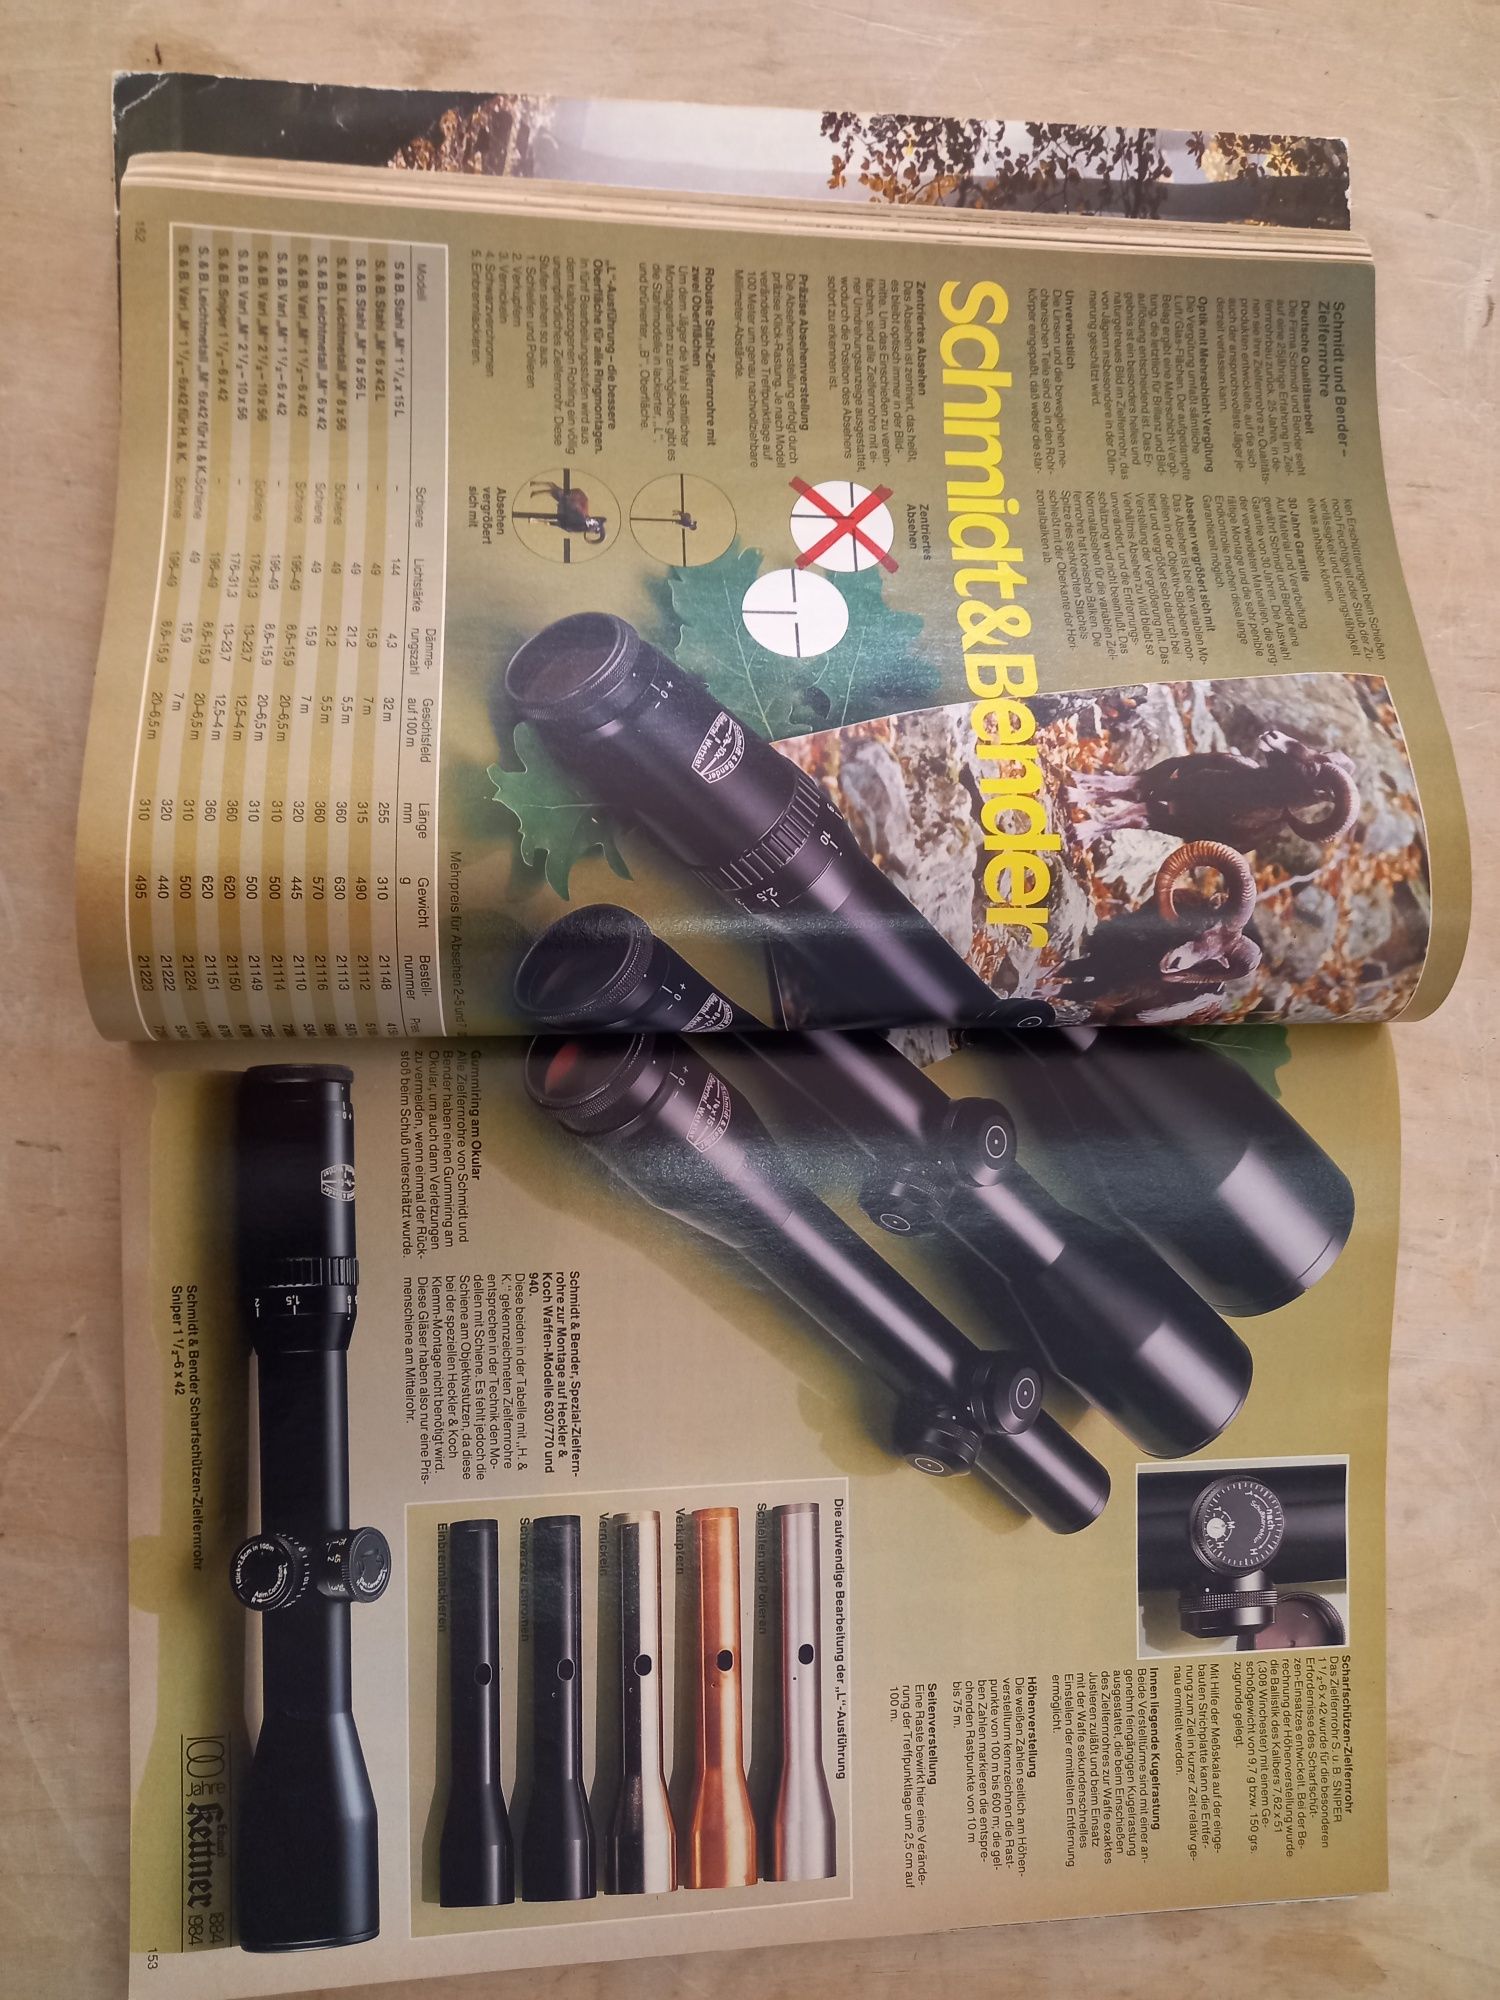 Юбилеен каталог Eduard Kettner 1983/84 - списание за оръжия, лов и ри